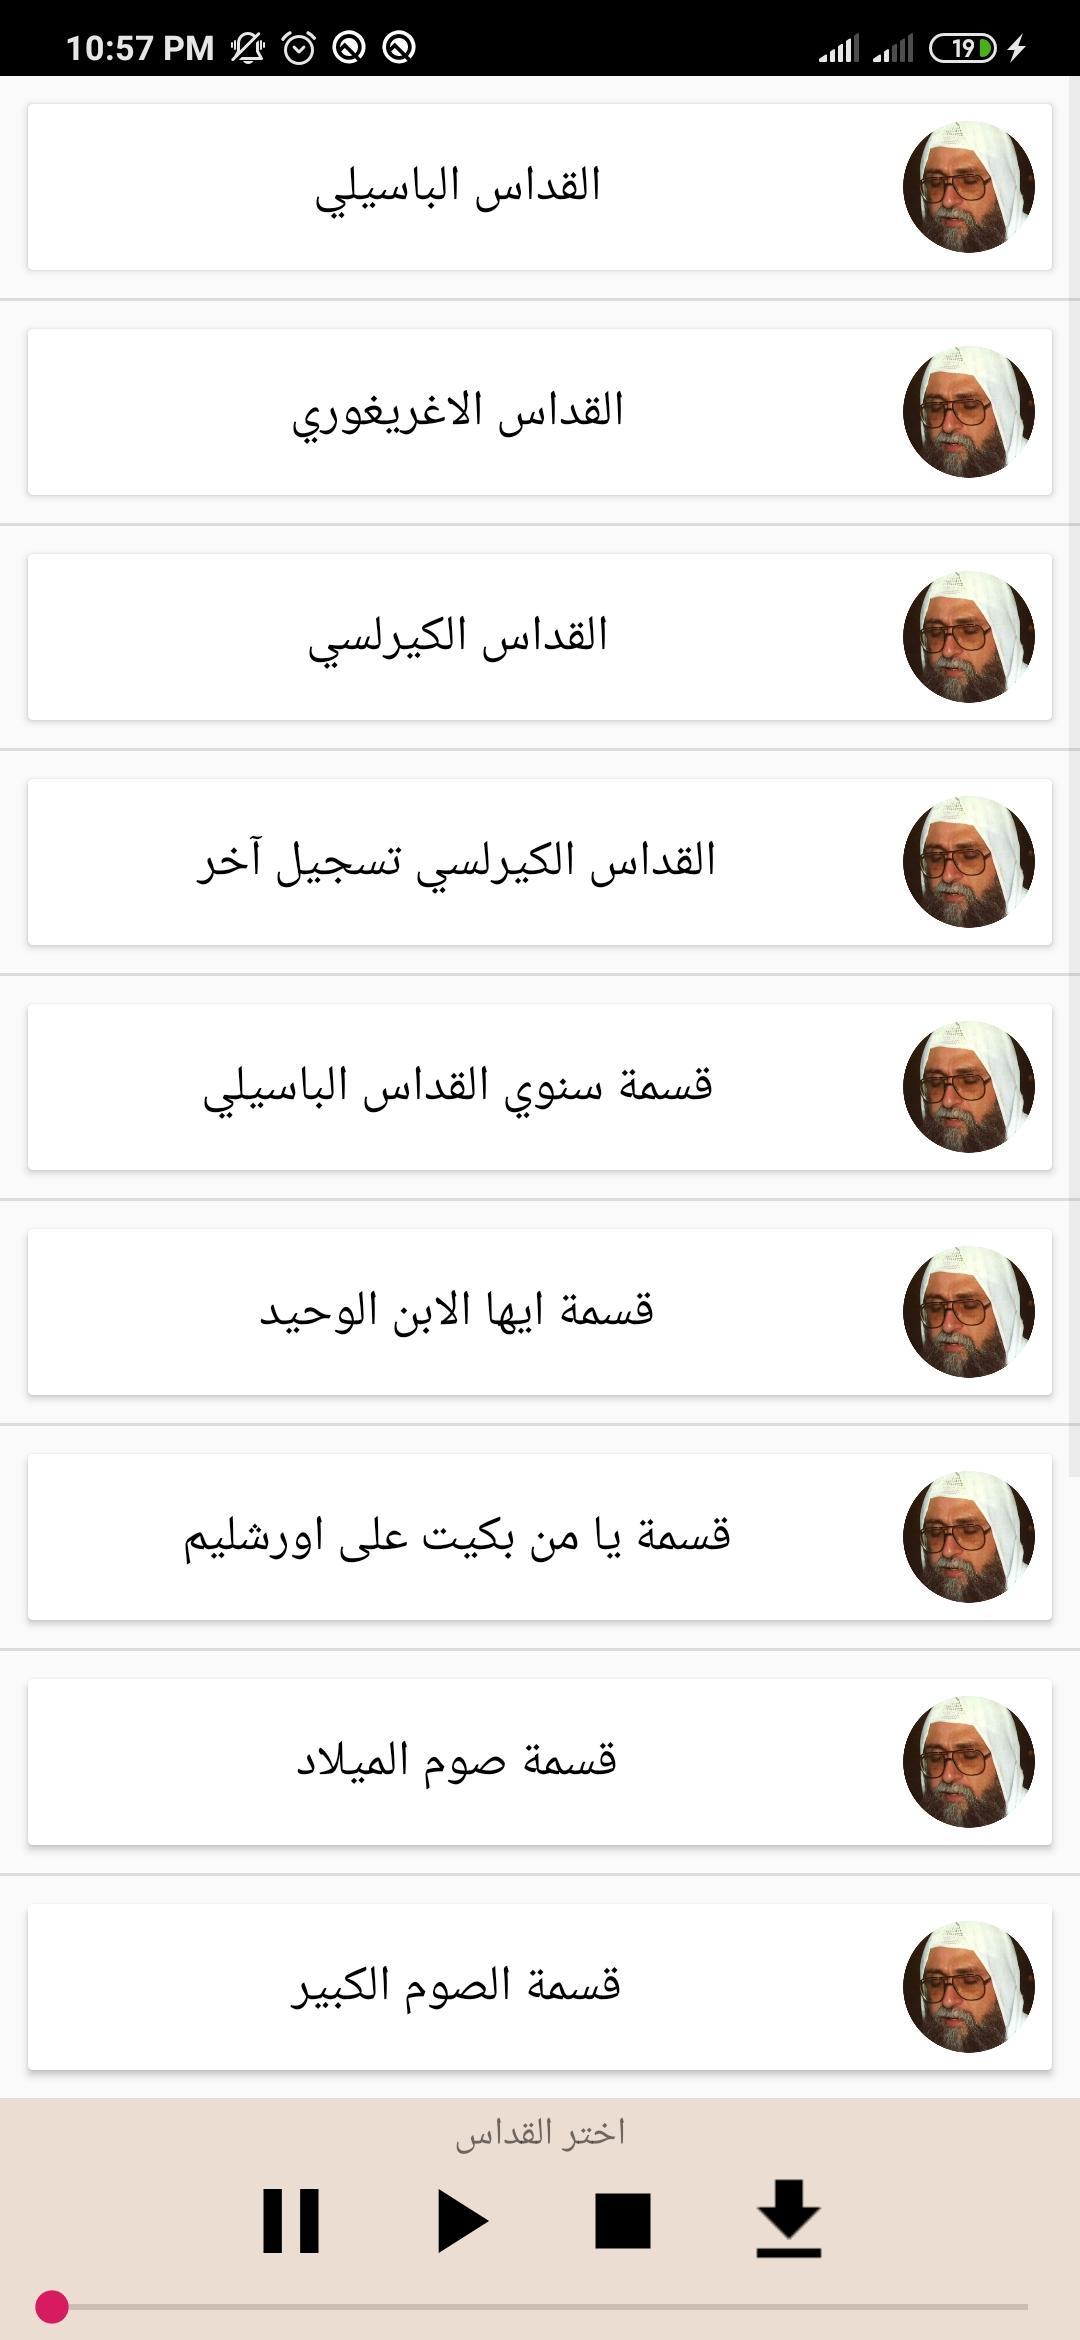 قيثارة السماء القمص يوسف اسعد for Android - APK Download